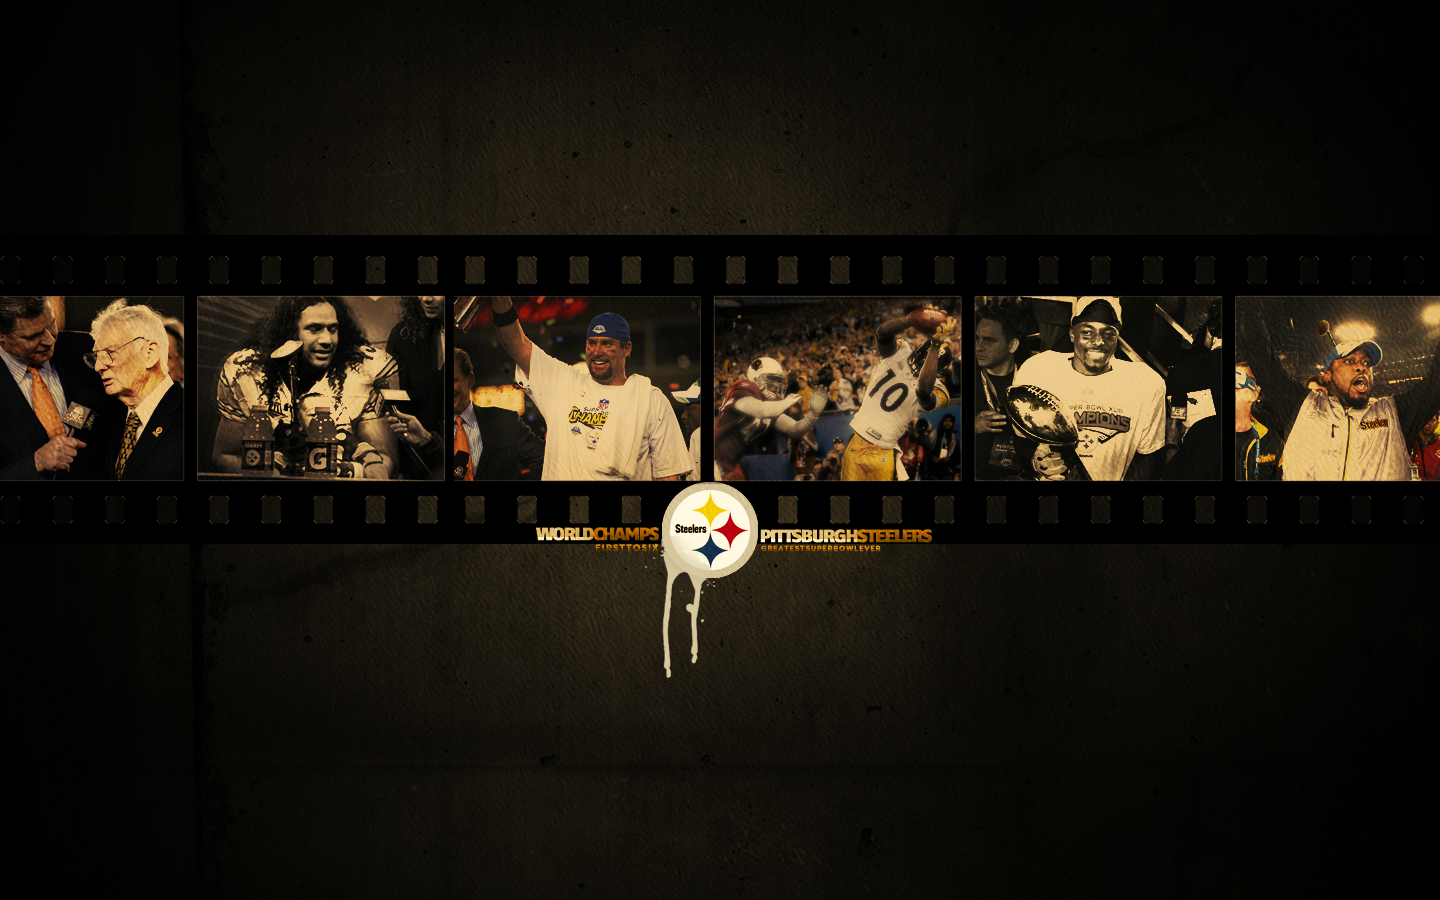 Free Pittsburgh Steelers wallpaper wallpaper Pittsburgh Steelers 1440x900